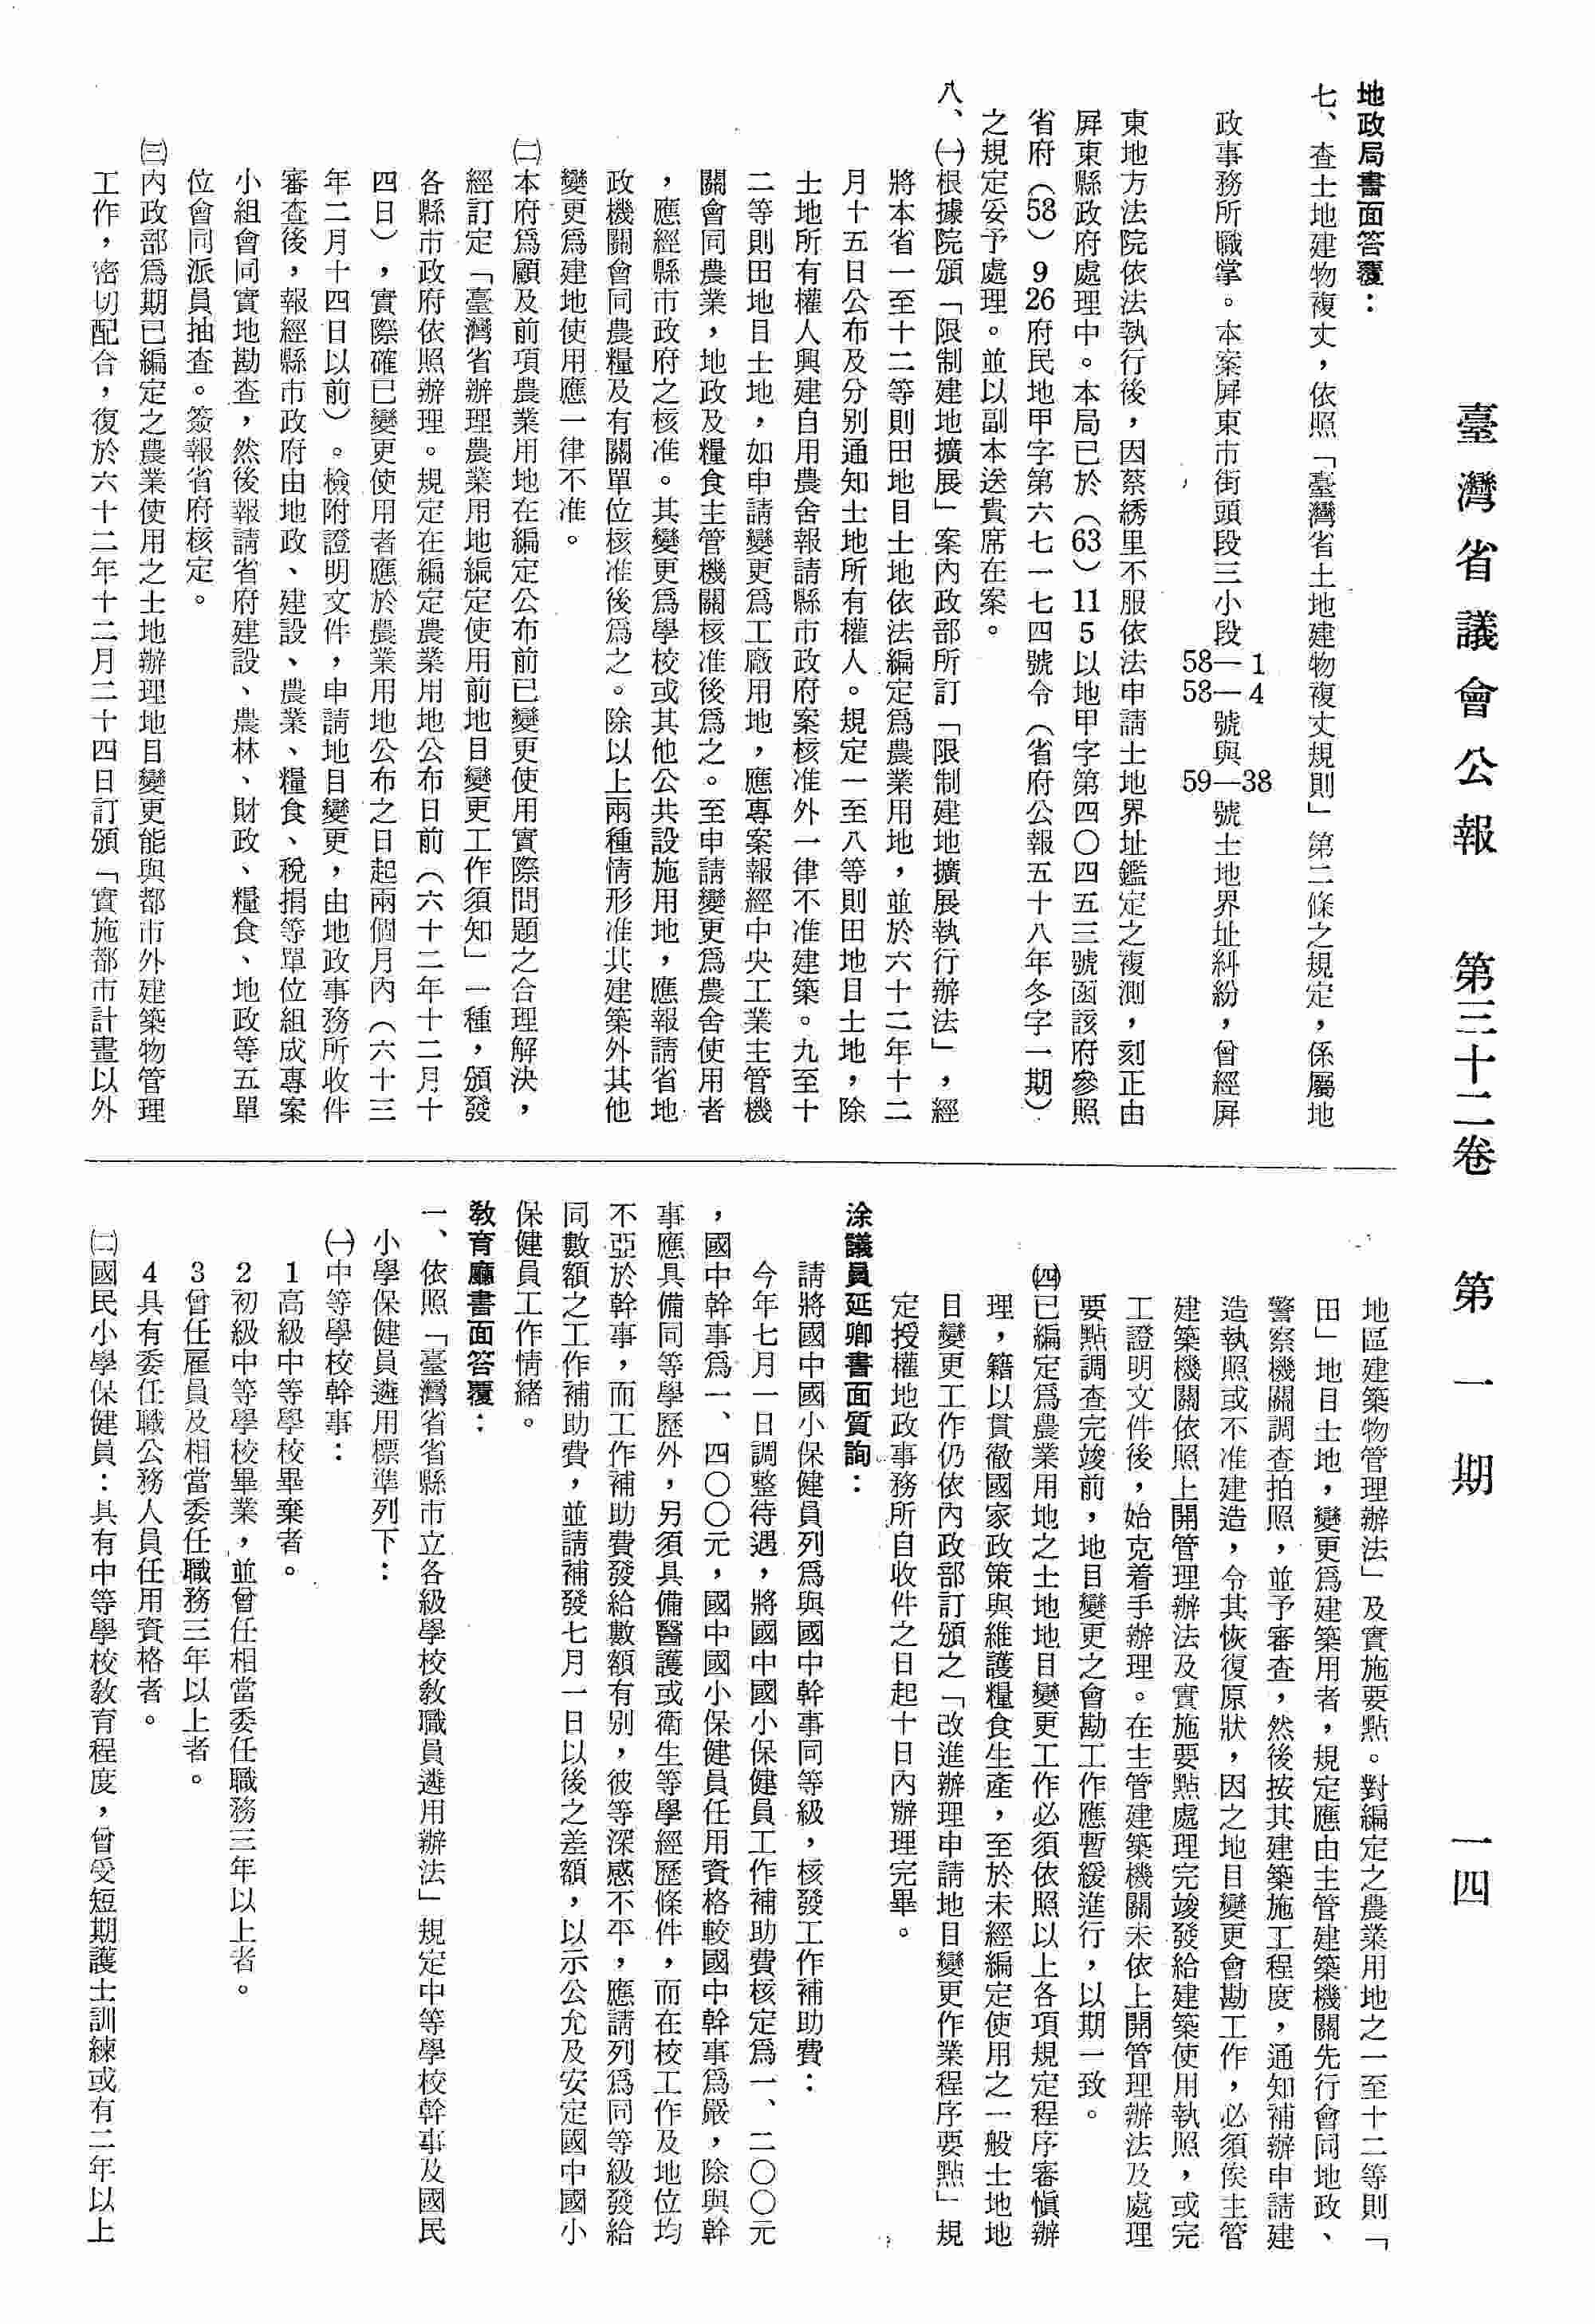 國中國小保健員列為與國中幹事同等級，核發工作補助費。